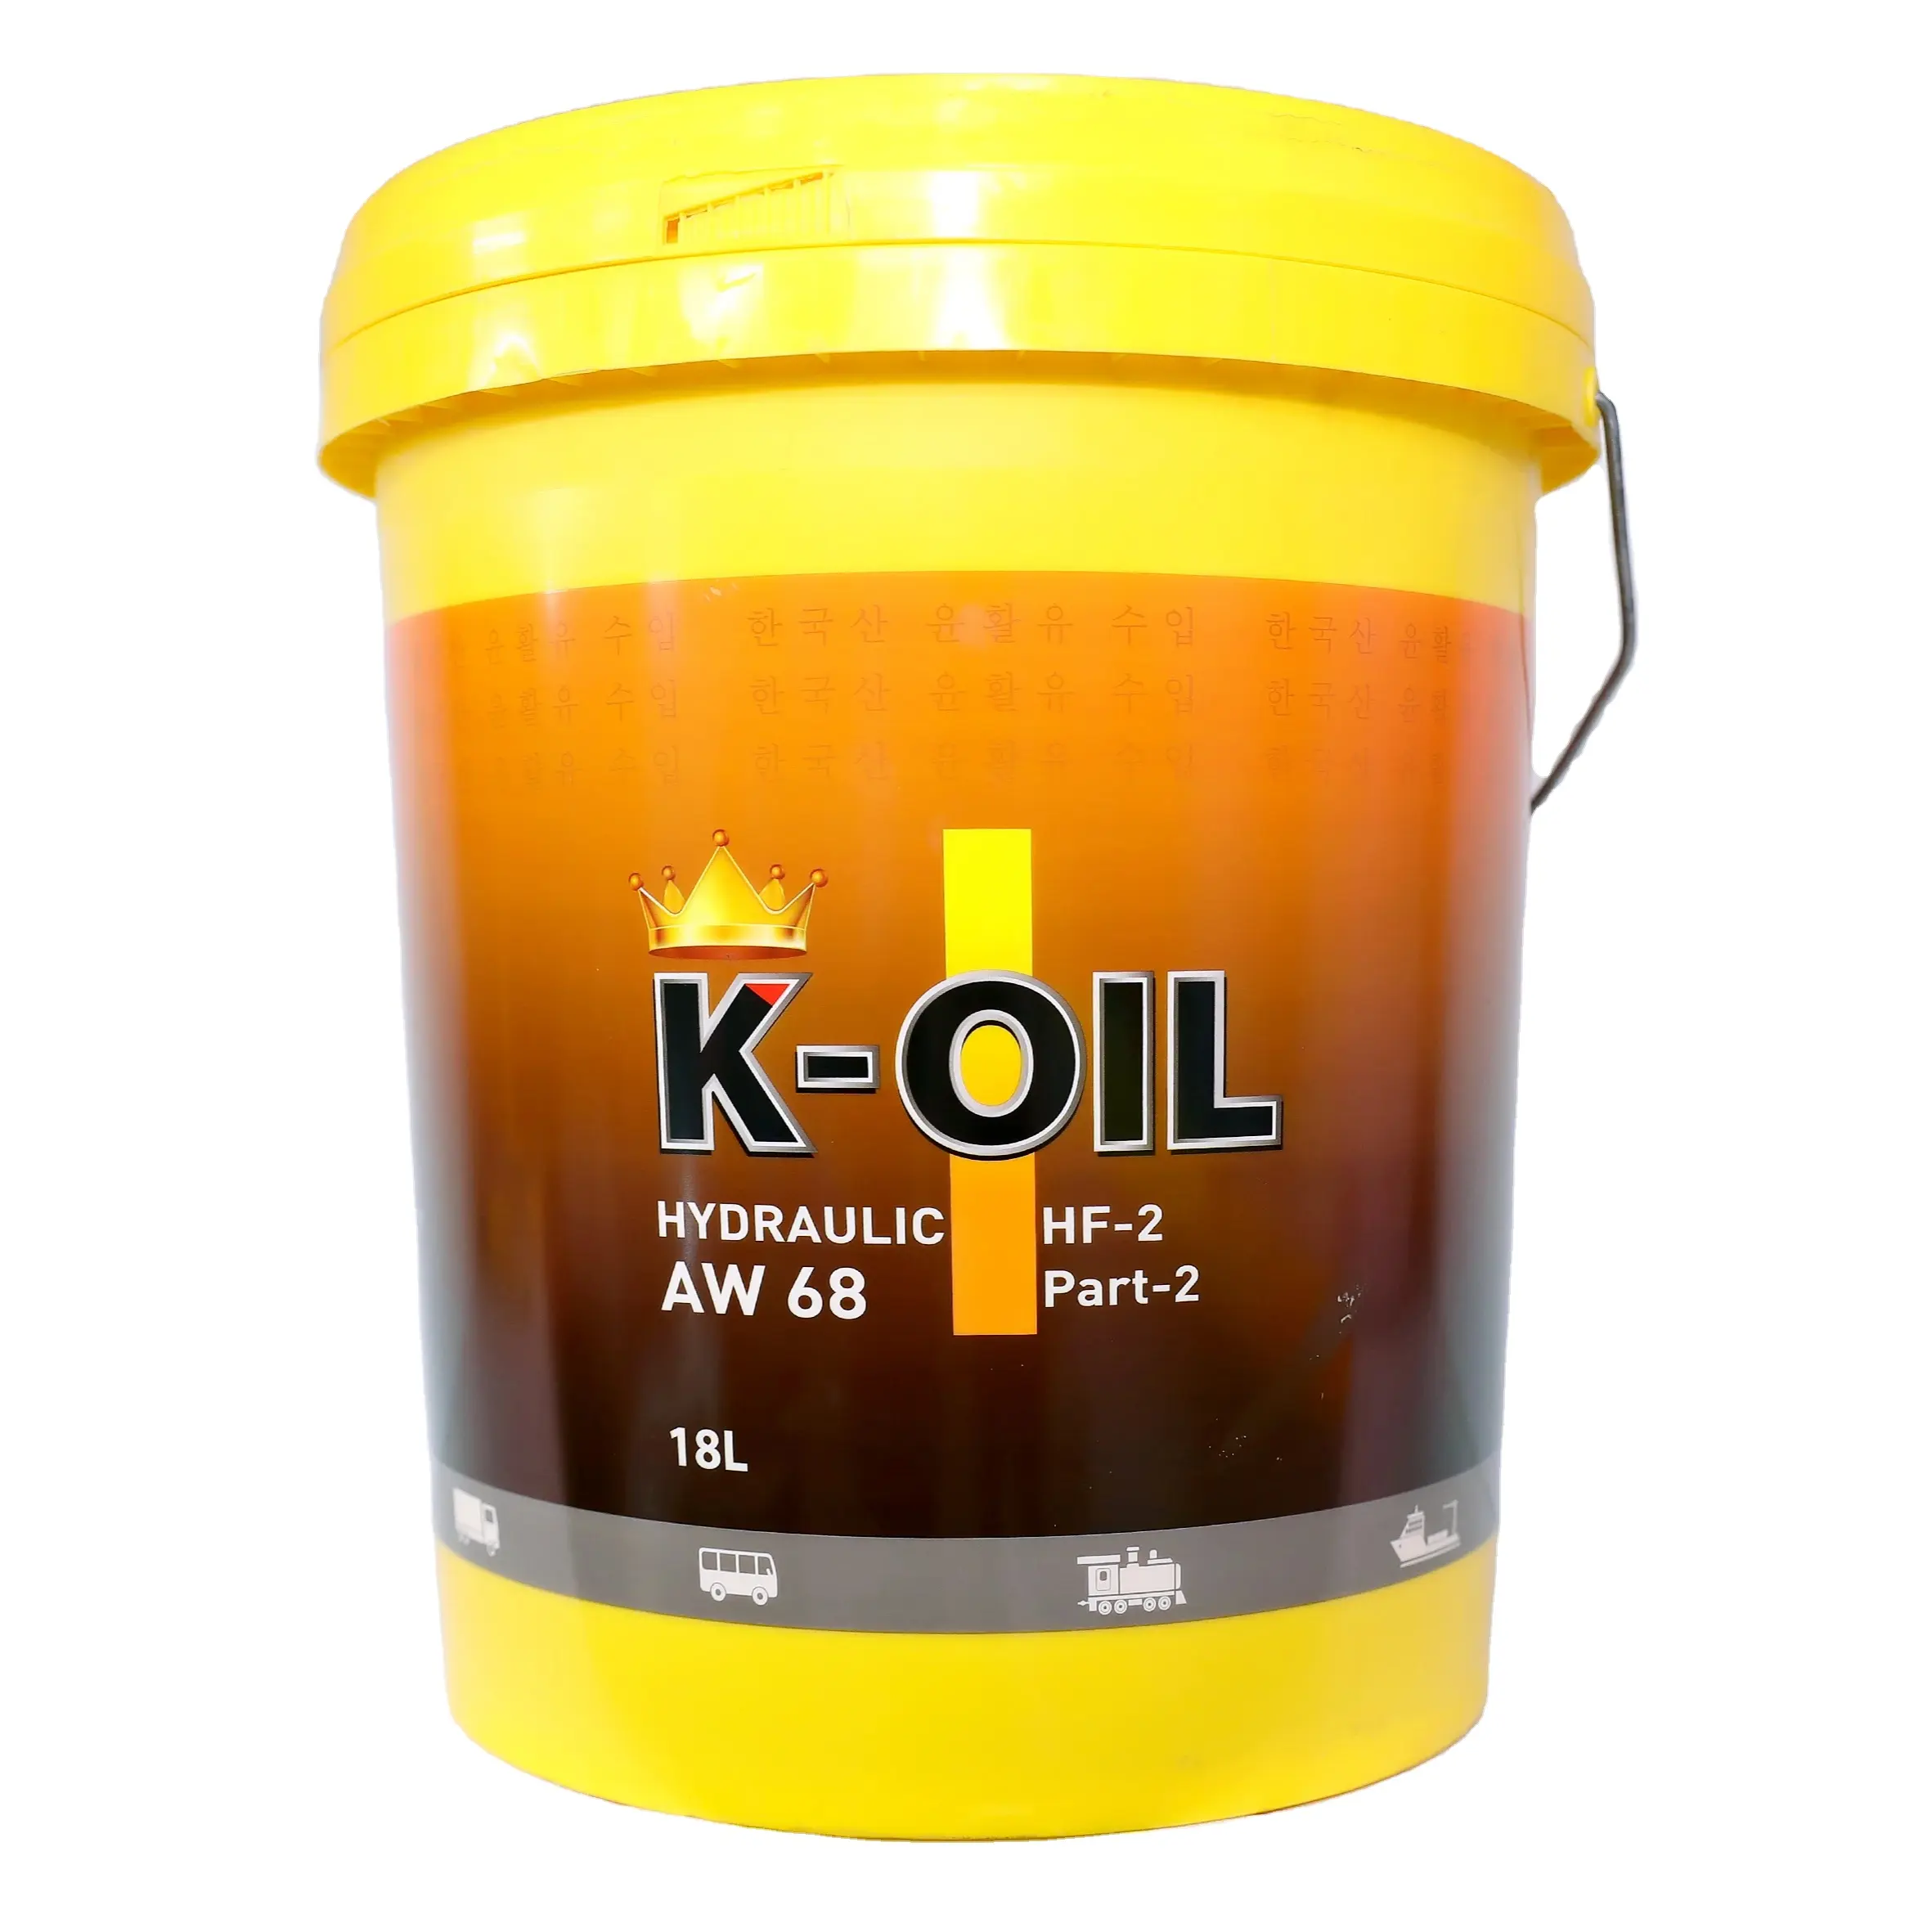 K-OIL idraulico AW68 con le proprietà eccezionali ati-wear ad alta temperatura e prezzo di fabbrica lubrificante per i treni, navi